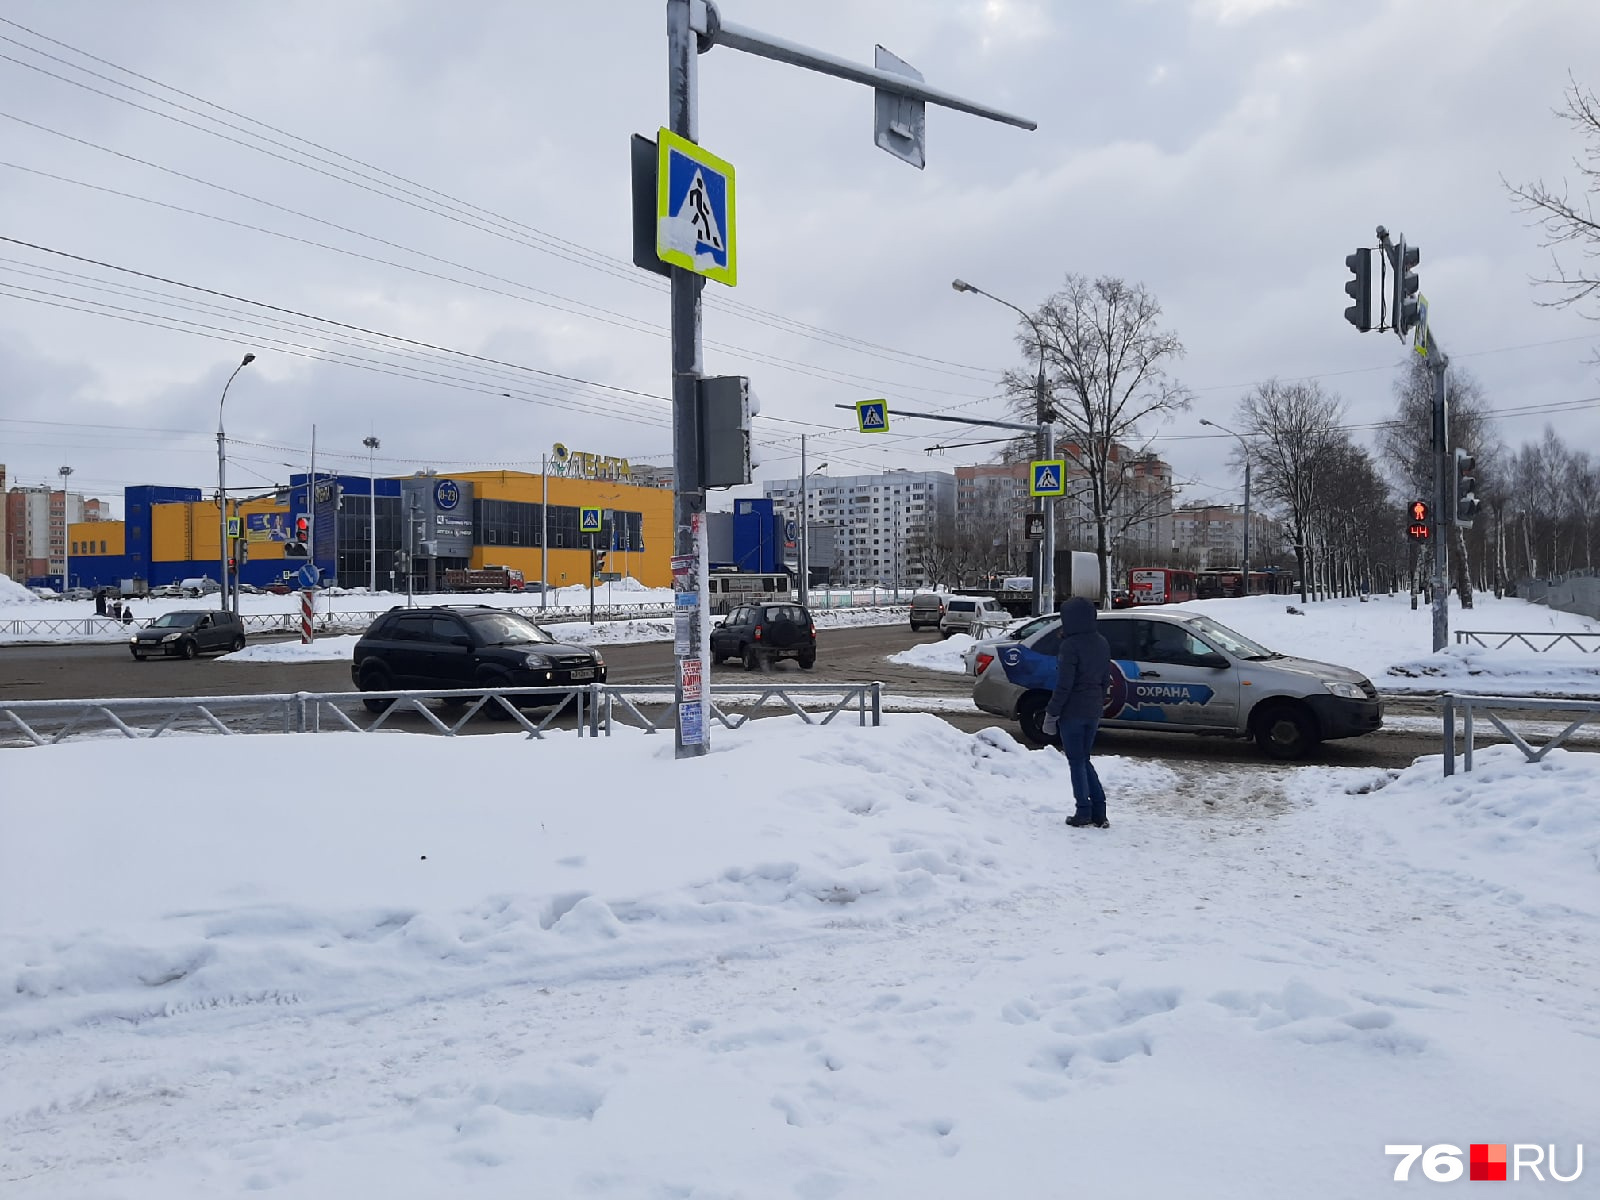 Вот, собственно, пересечение Ленинградского проспекта и четной стороны улицы Панина. Здесь на Ленинградский проспект выезжают дополнительные потоки машин с обеих сторон